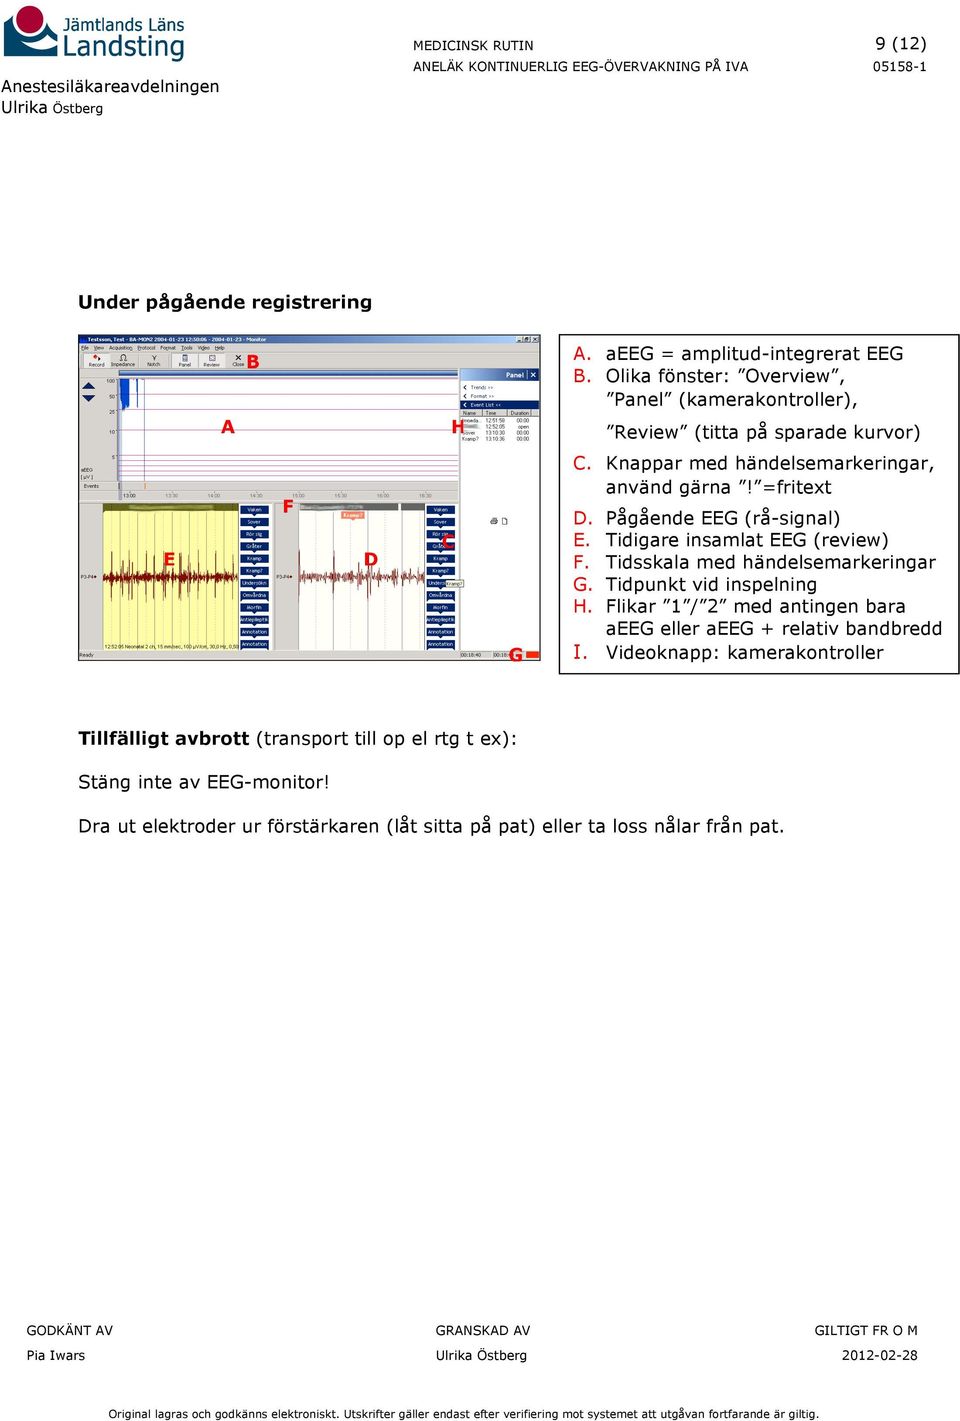 Pågående EEG (rå-signal) E. Tidigare insamlat EEG (review) F. Tidsskala med händelsemarkeringar G. Tidpunkt vid inspelning H.